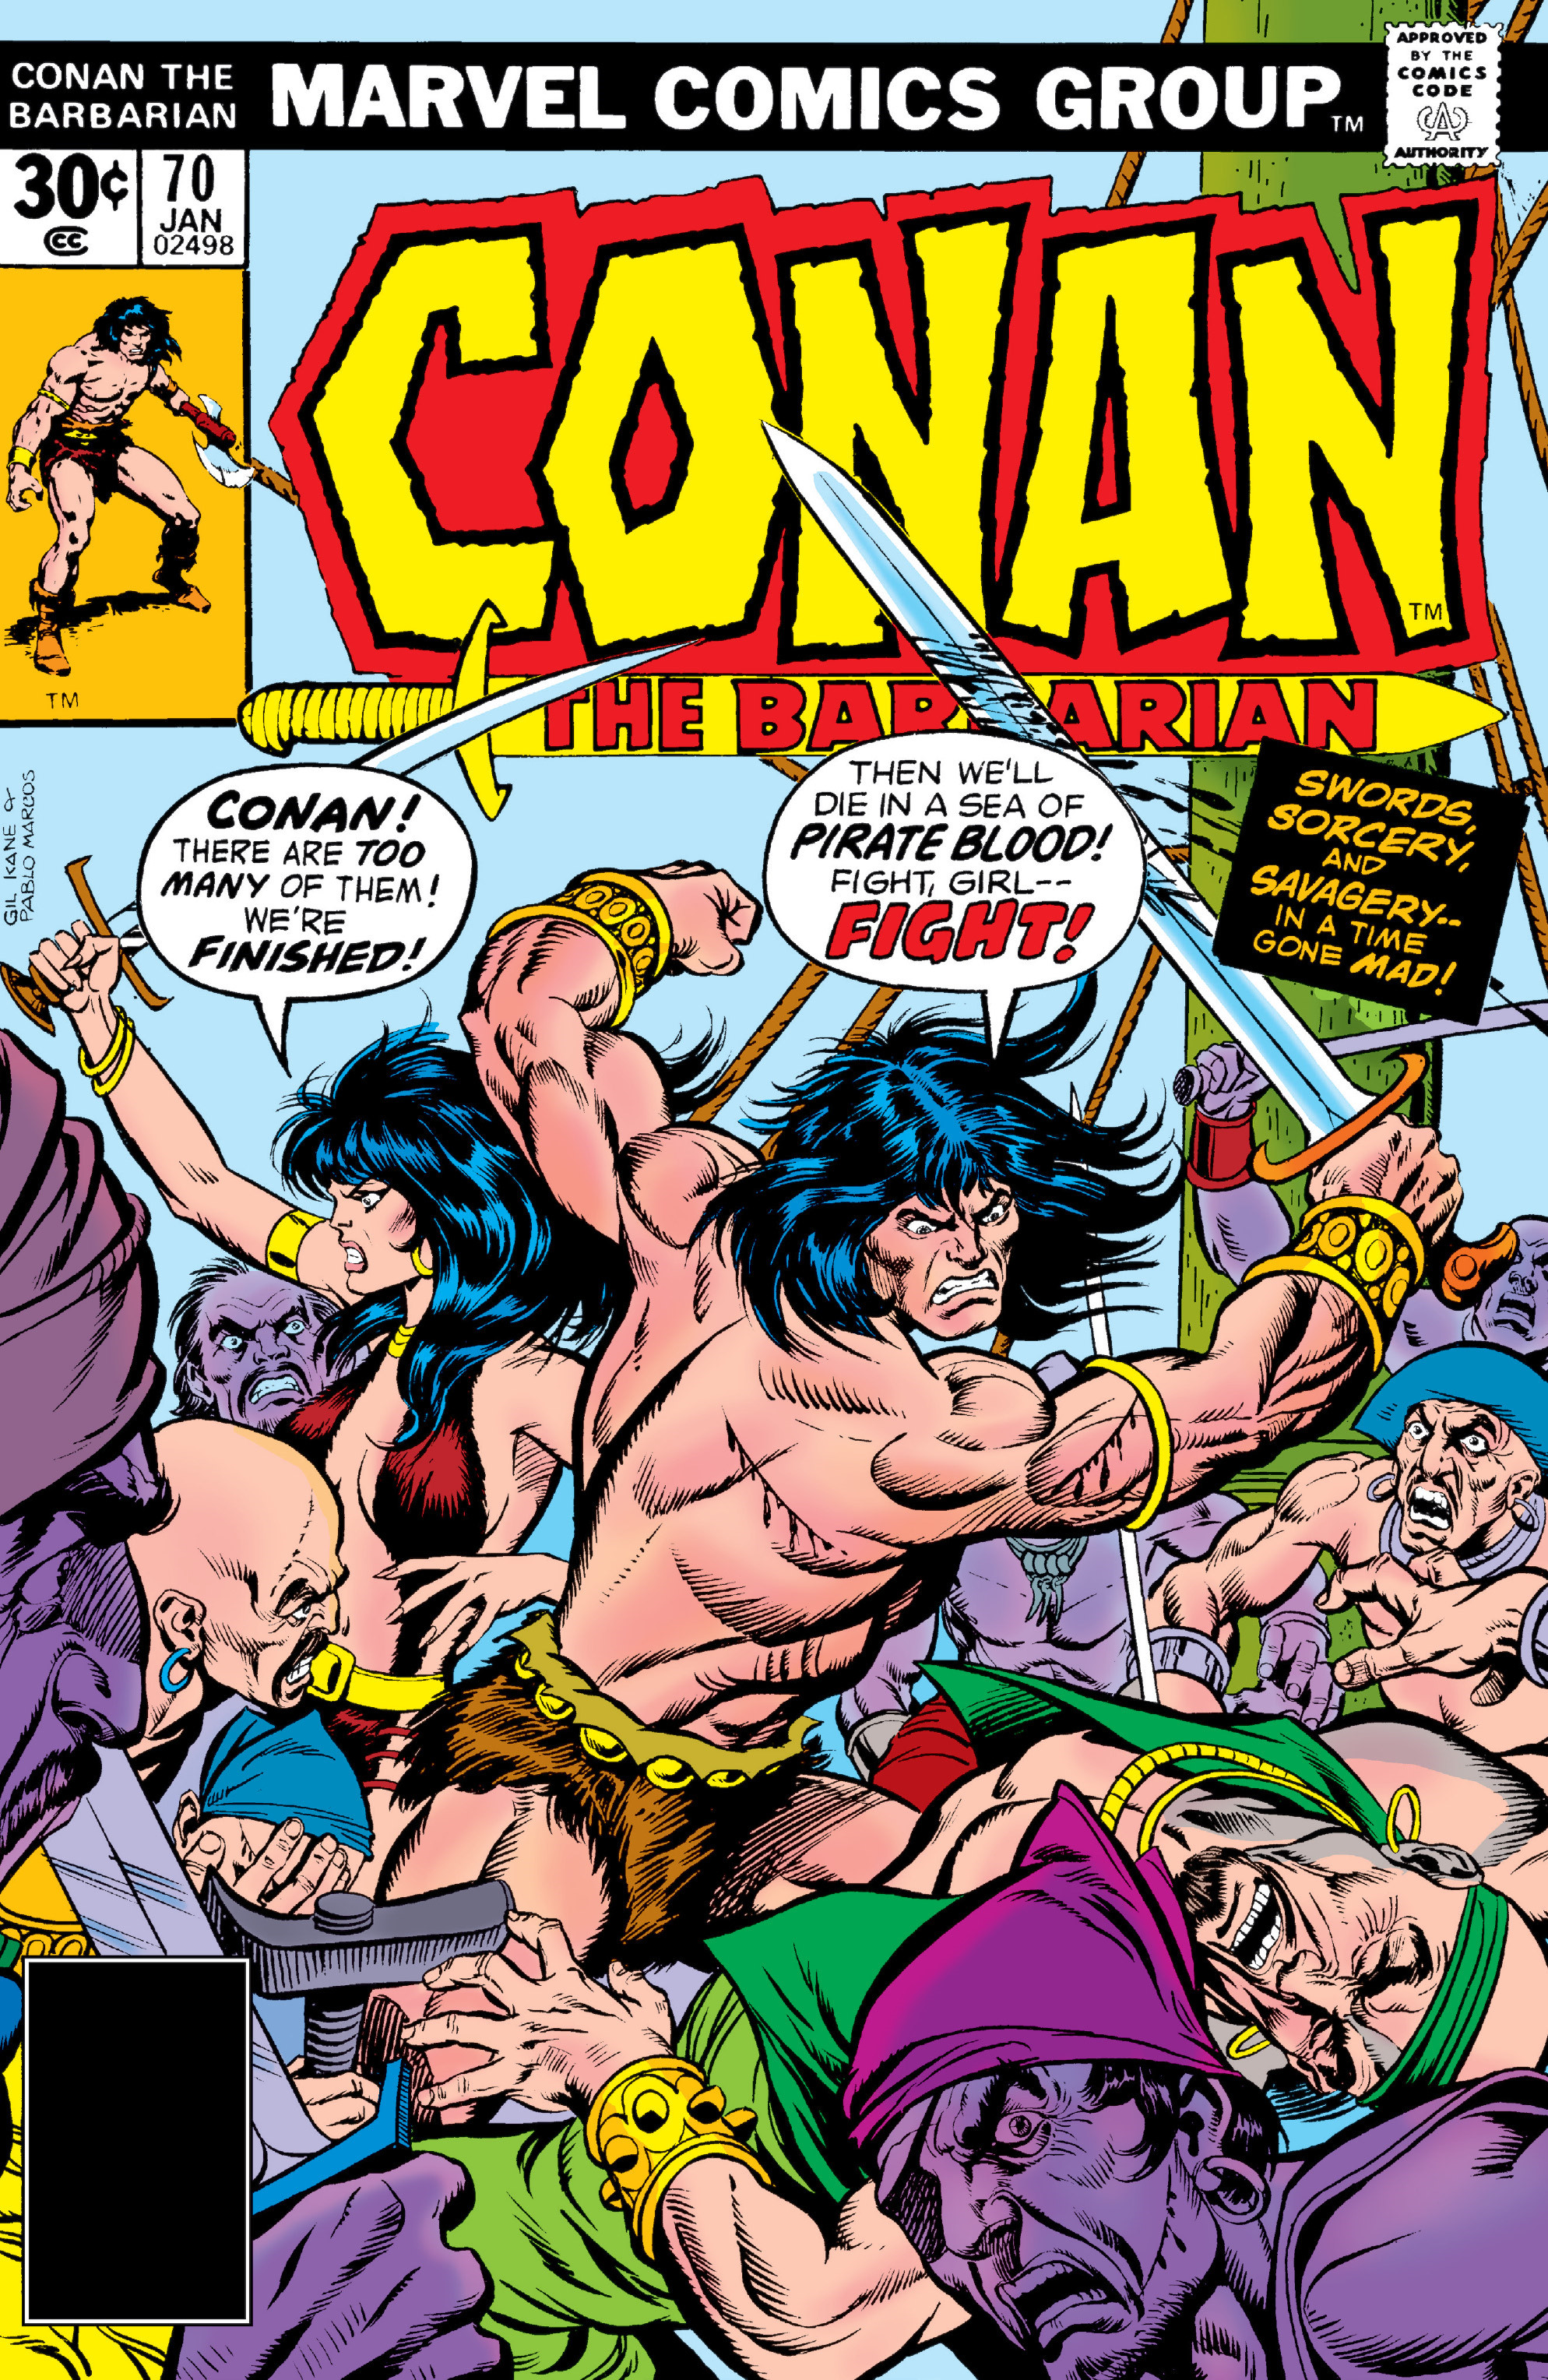 ComicConnect - Texeira, Mark - CONAN THE BARBARIAN (1970-93) #227